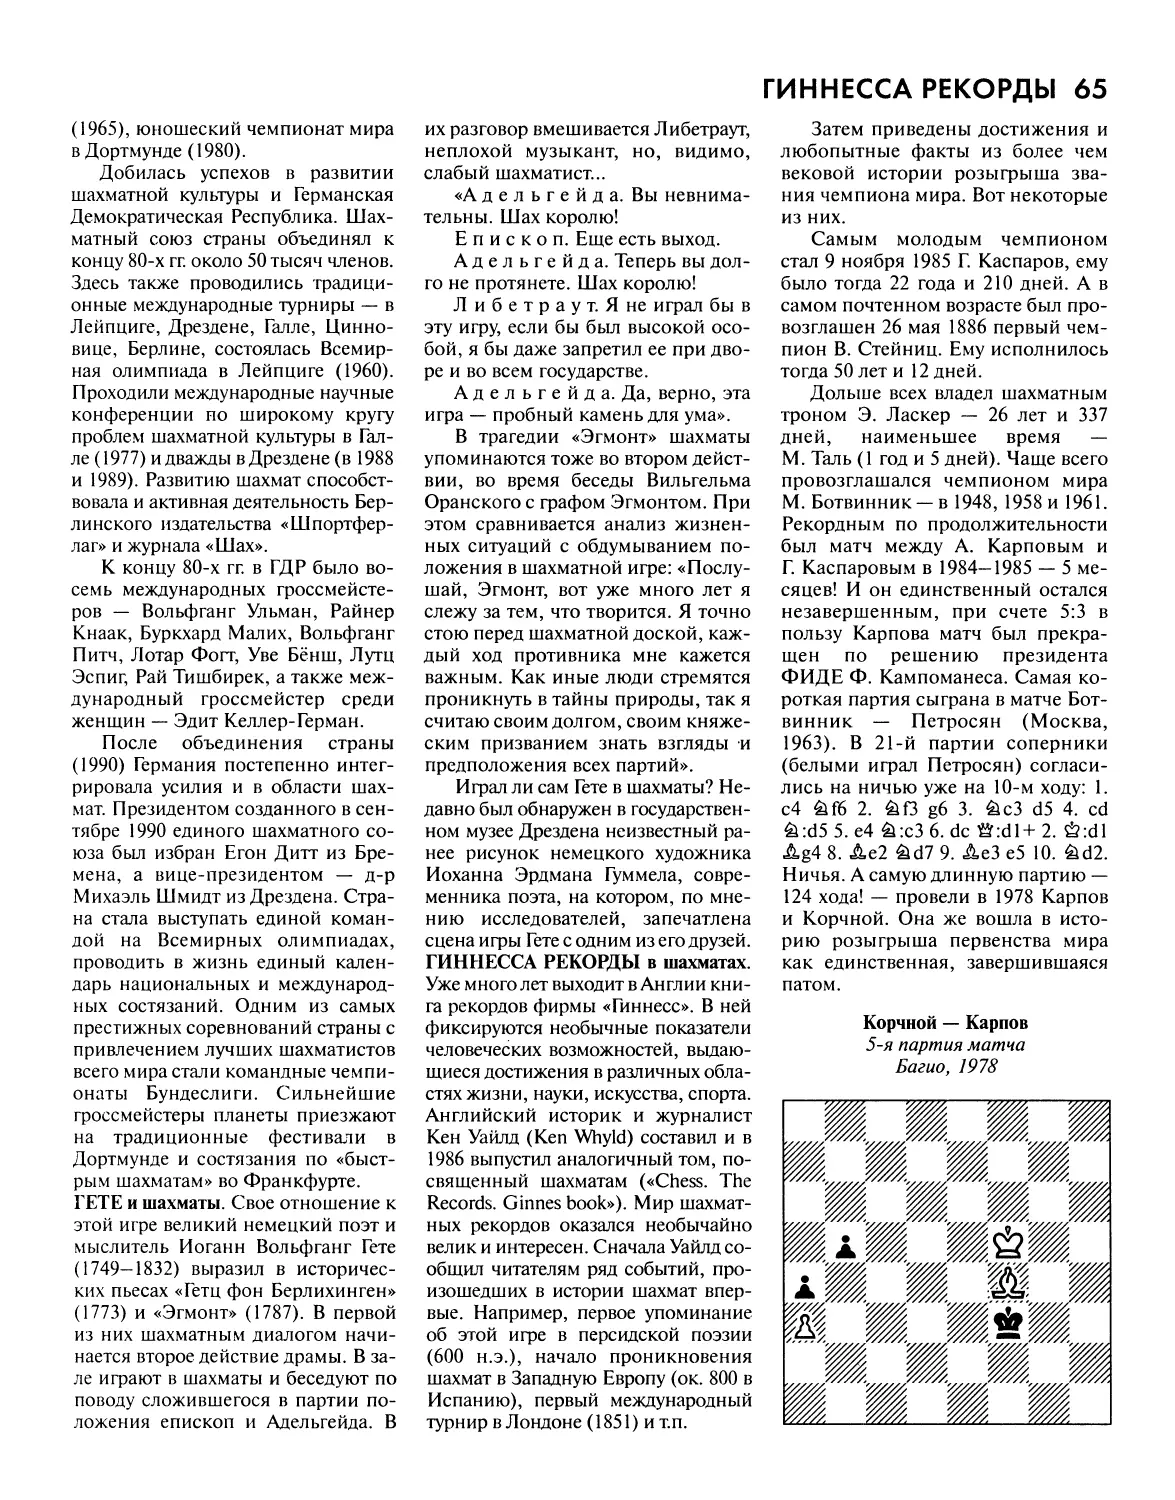 Гете и шахматы
Гиннесса рекорды в шахматах